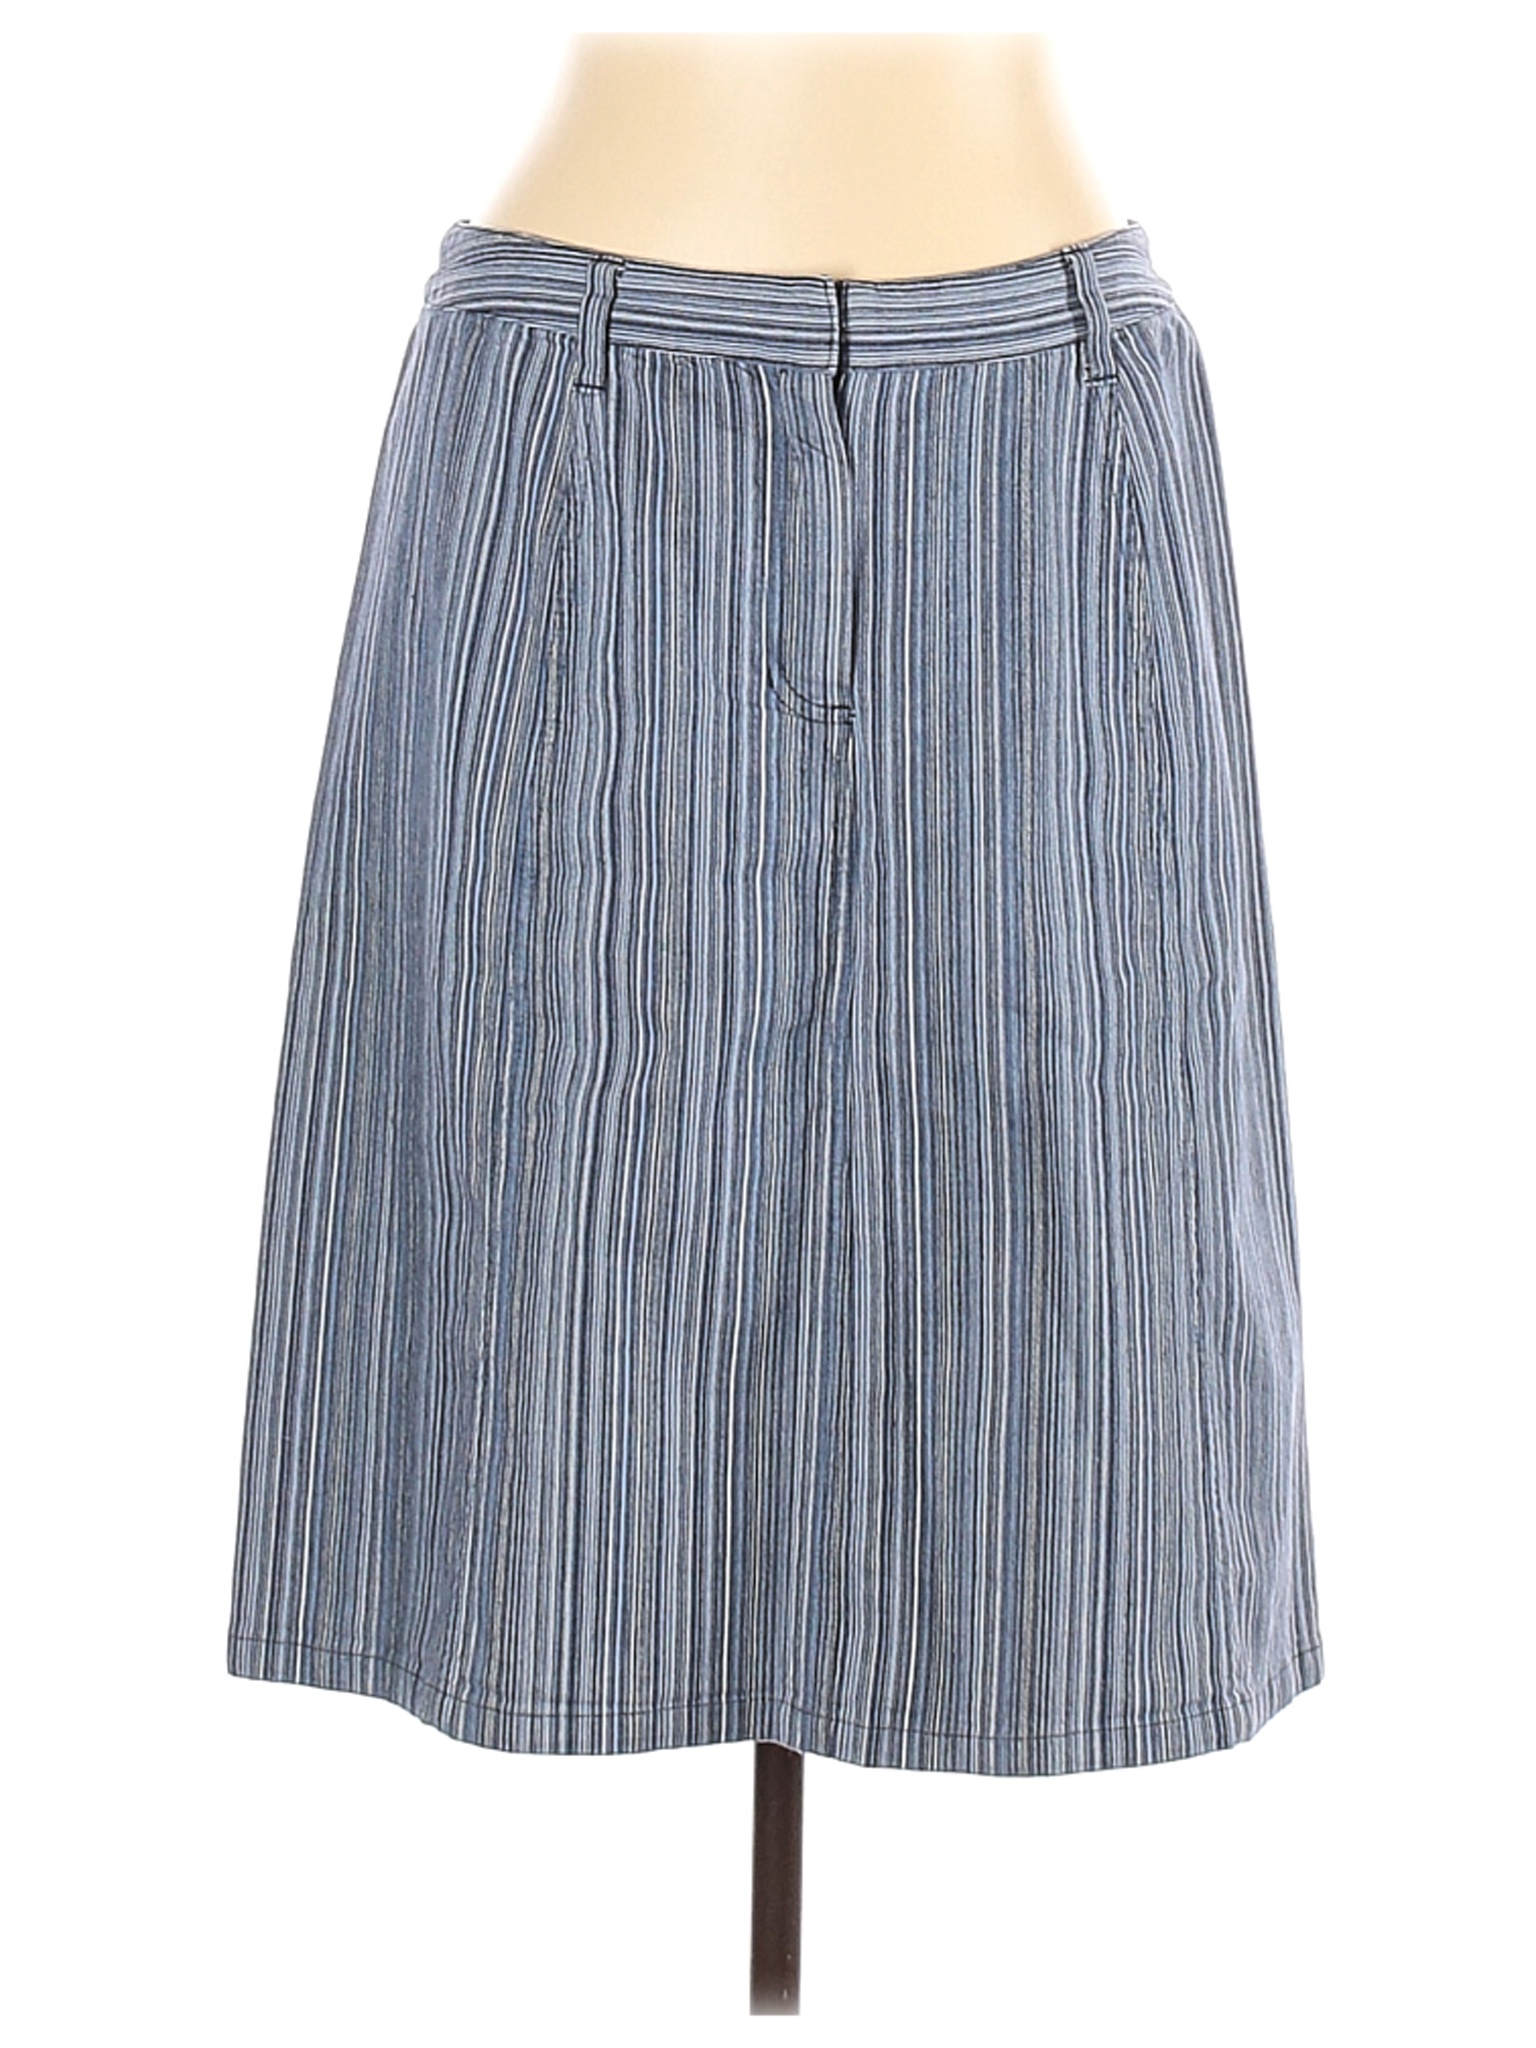 Christopher & Banks Women Blue Denim Skirt 12 | eBay